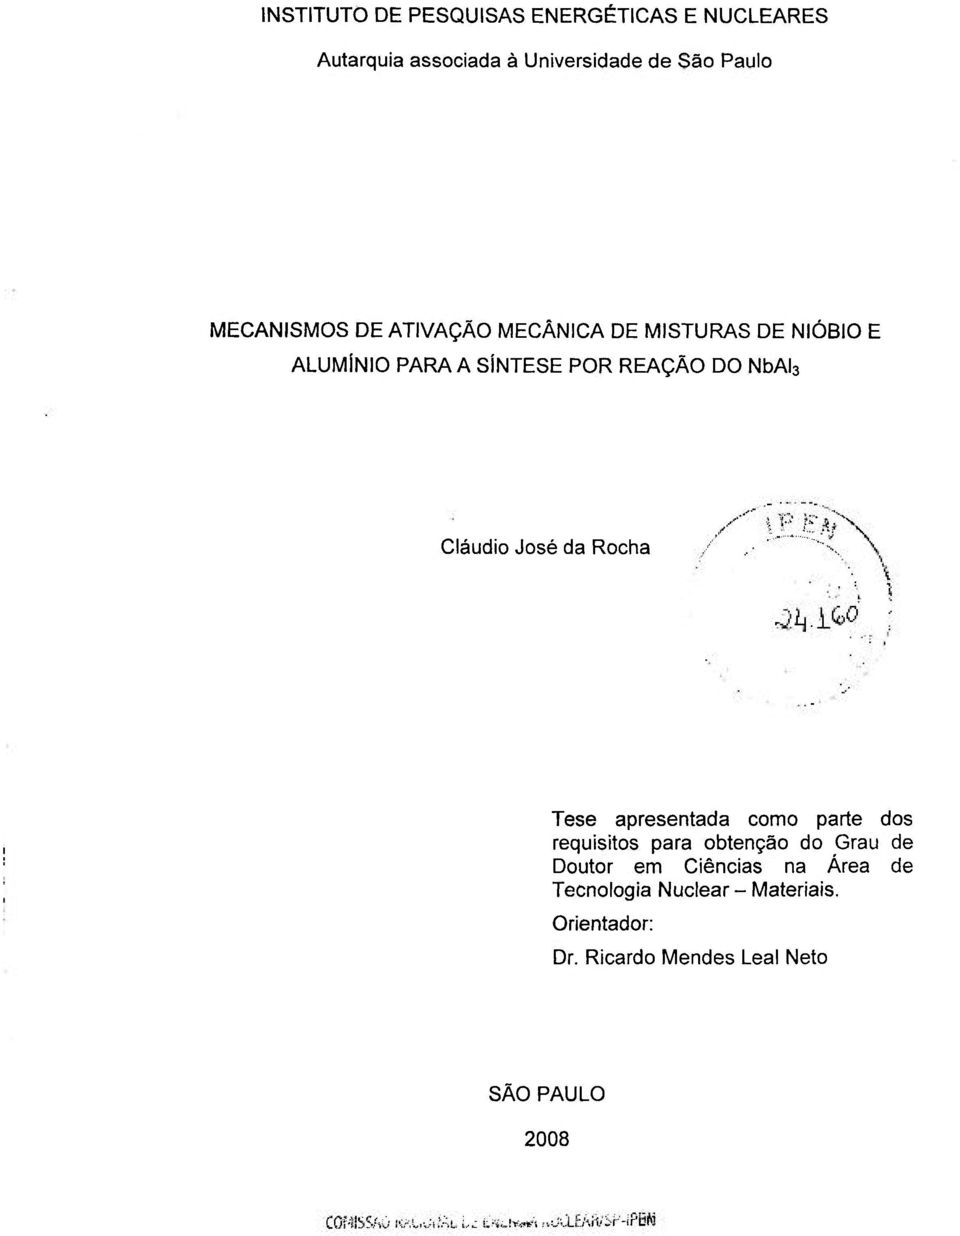 Cláudio José da Rocha Tese apresentada como parte dos requisitos para obtenção do Grau de Doutor em